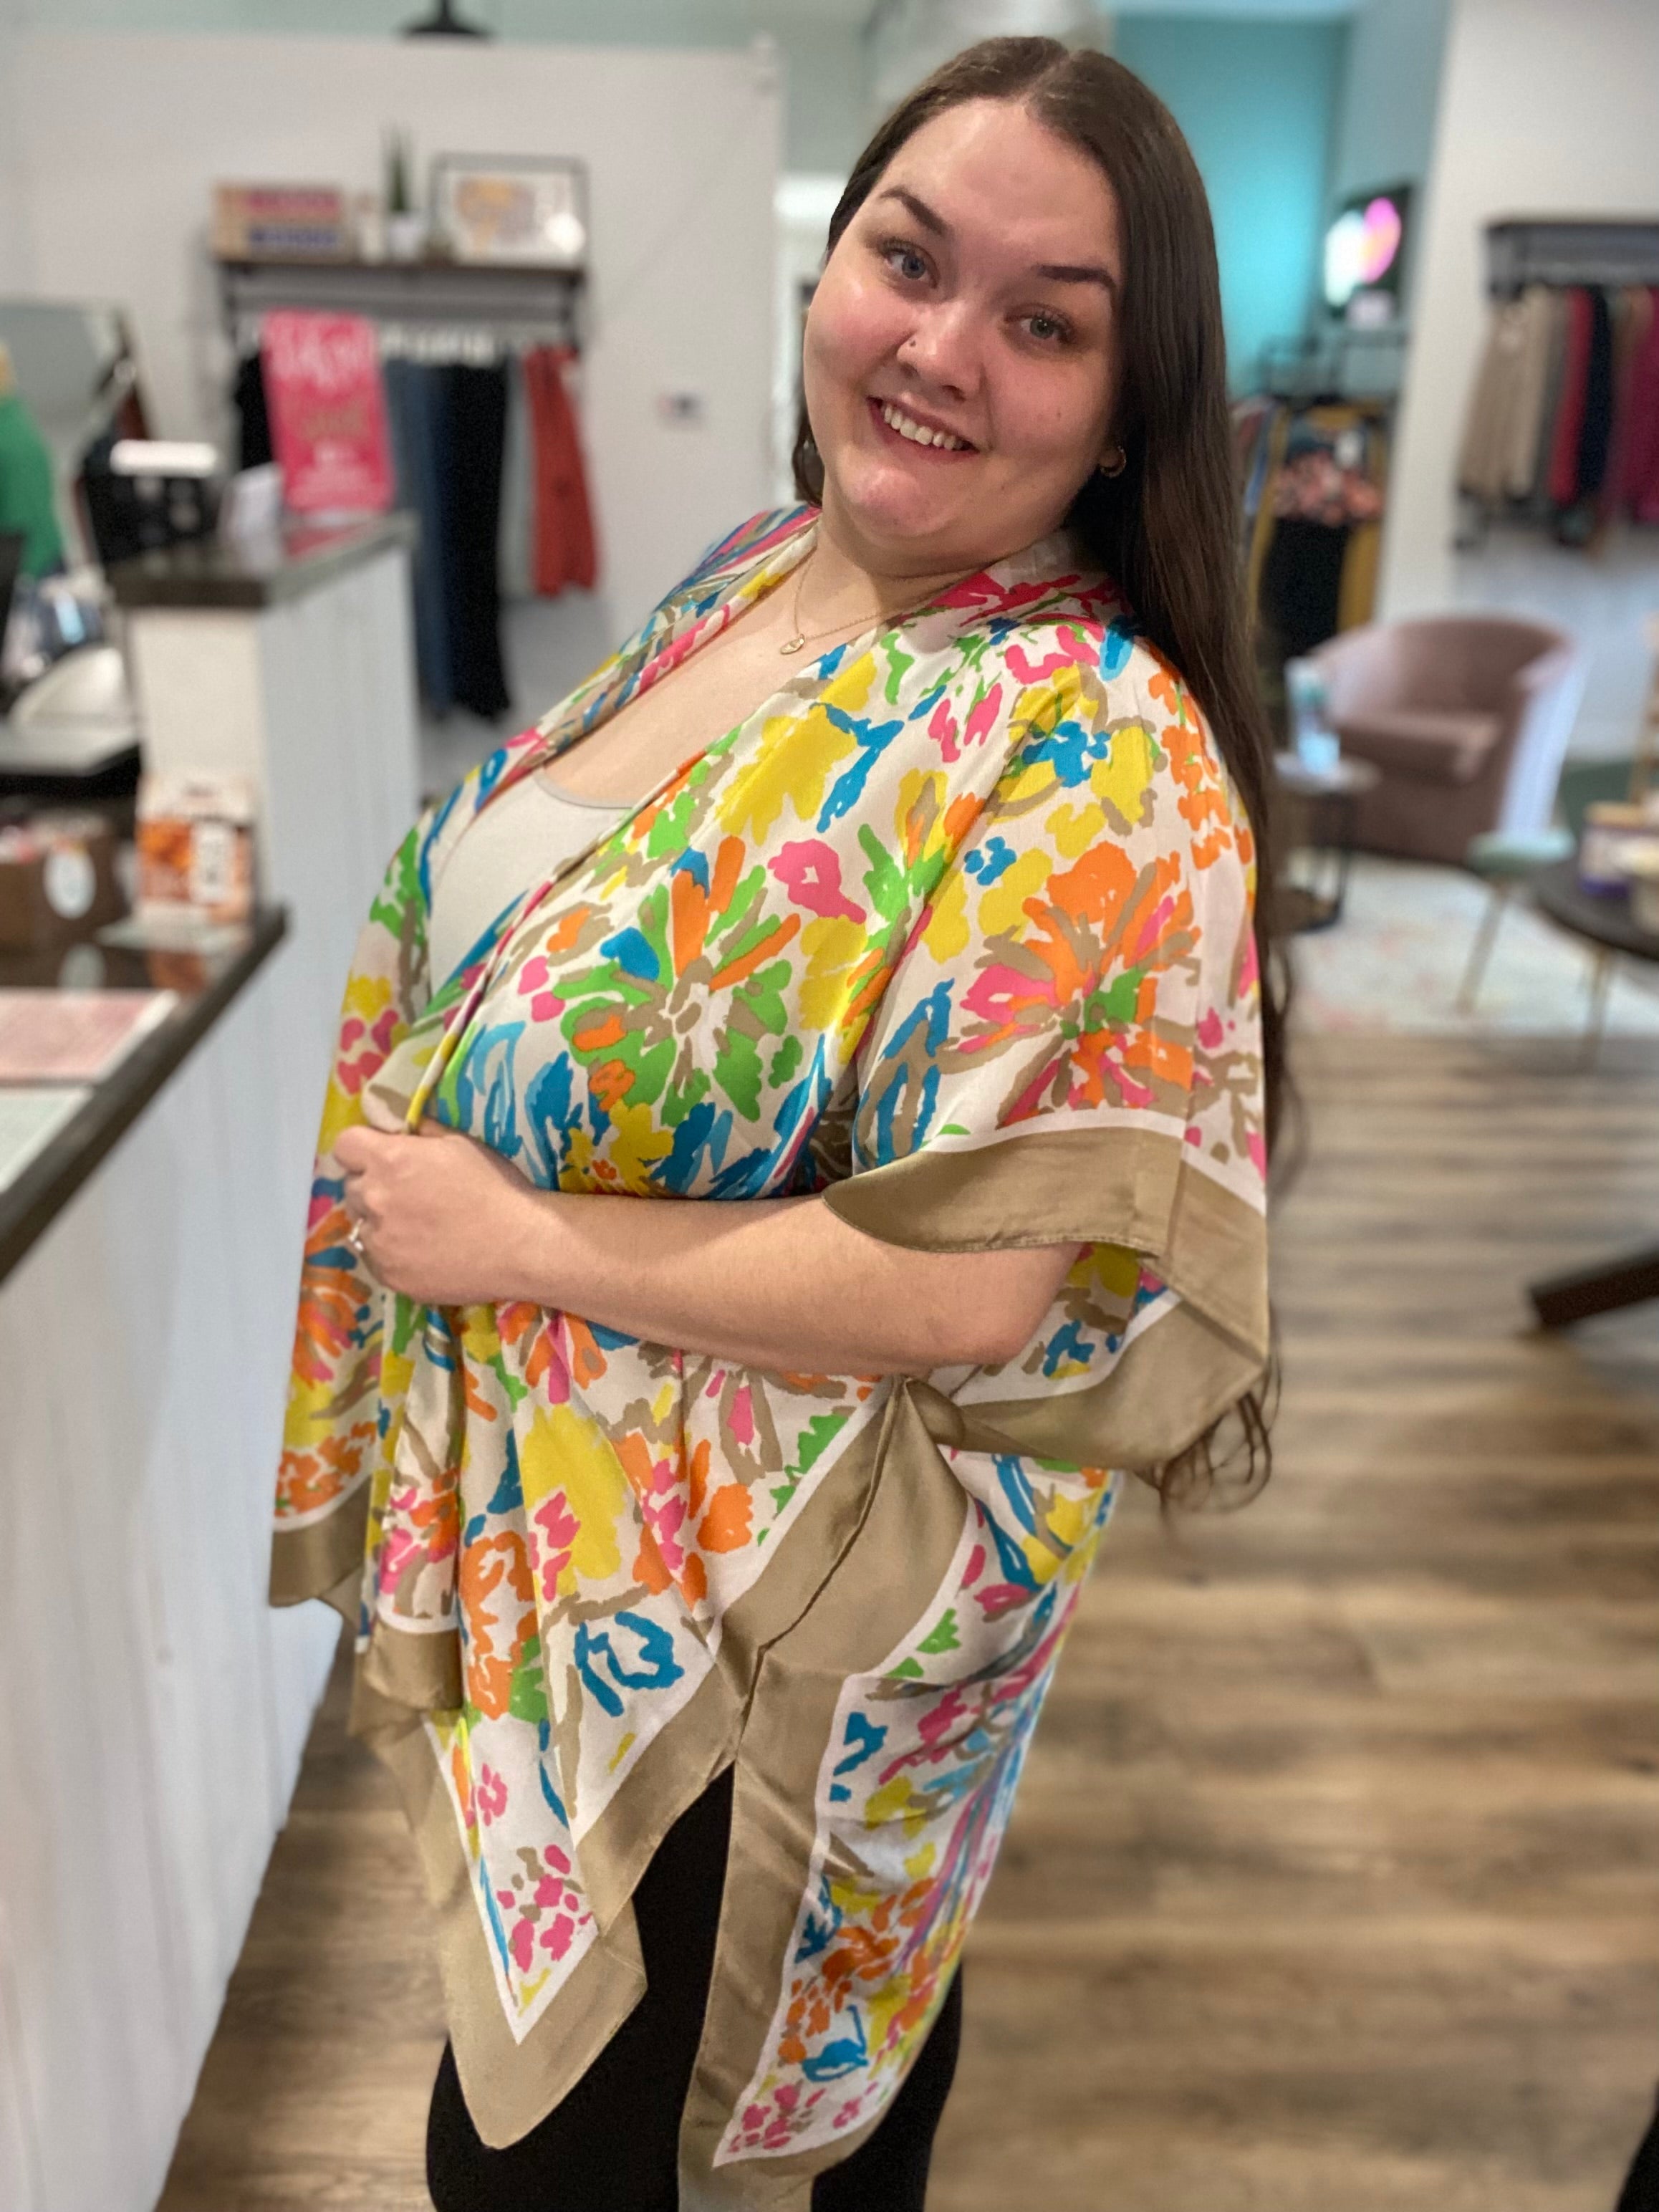 Shop Silky Bright Floral Print Kimono-Kimonos at Ruby Joy Boutique, a Women's Clothing Store in Pickerington, Ohio